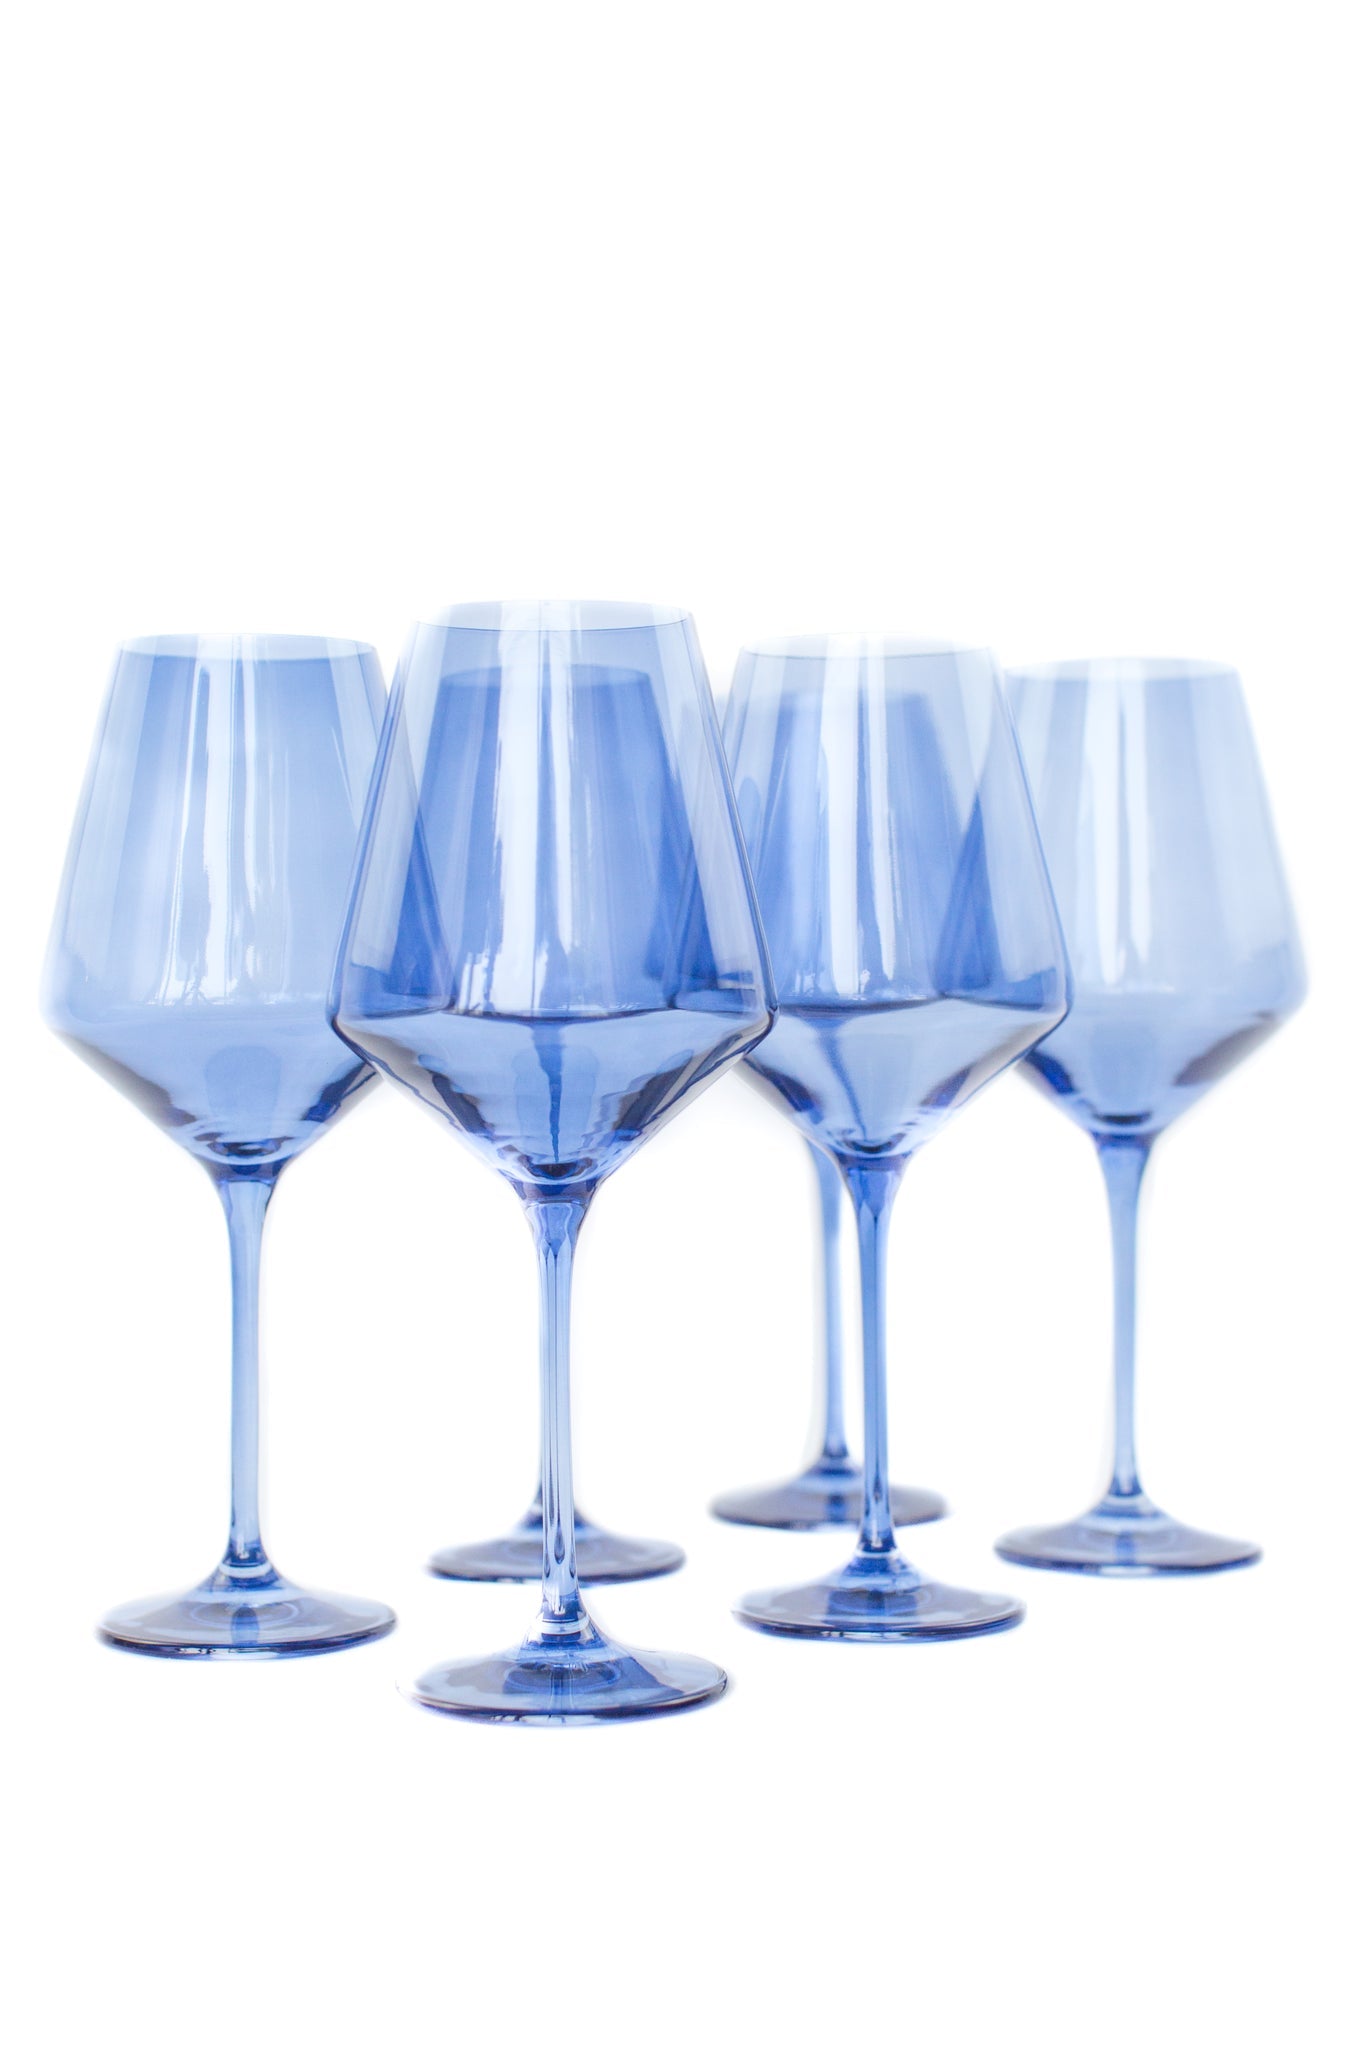 Load image into Gallery viewer, Estelle Stemmed Wine Glasses - Cobalt Blue
